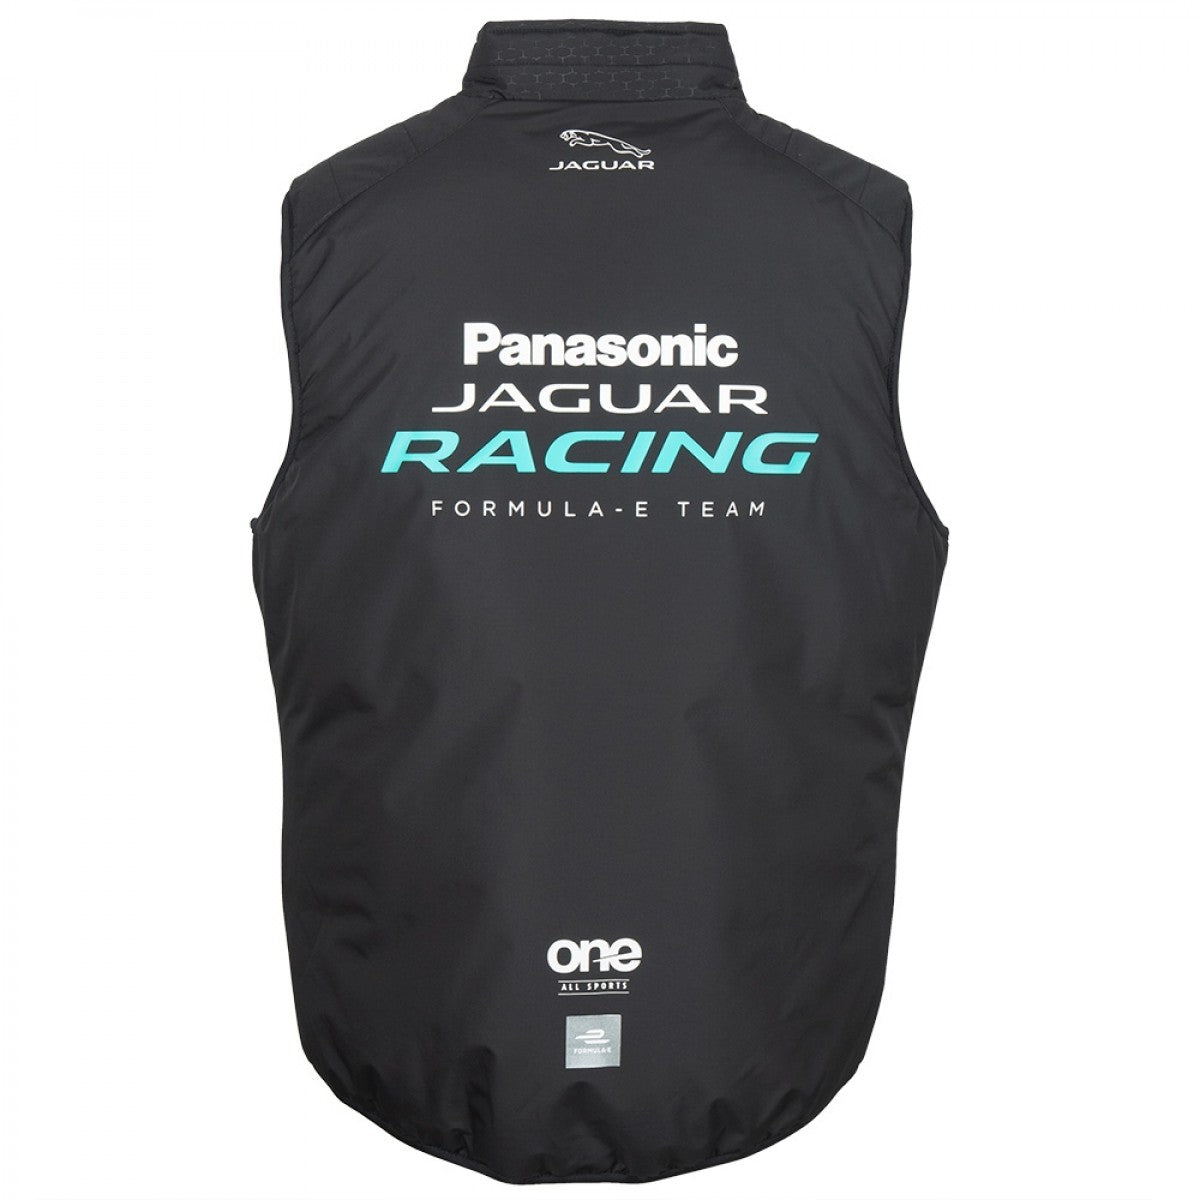 Unisex Panasonic Jaguar Racing Gilet XL